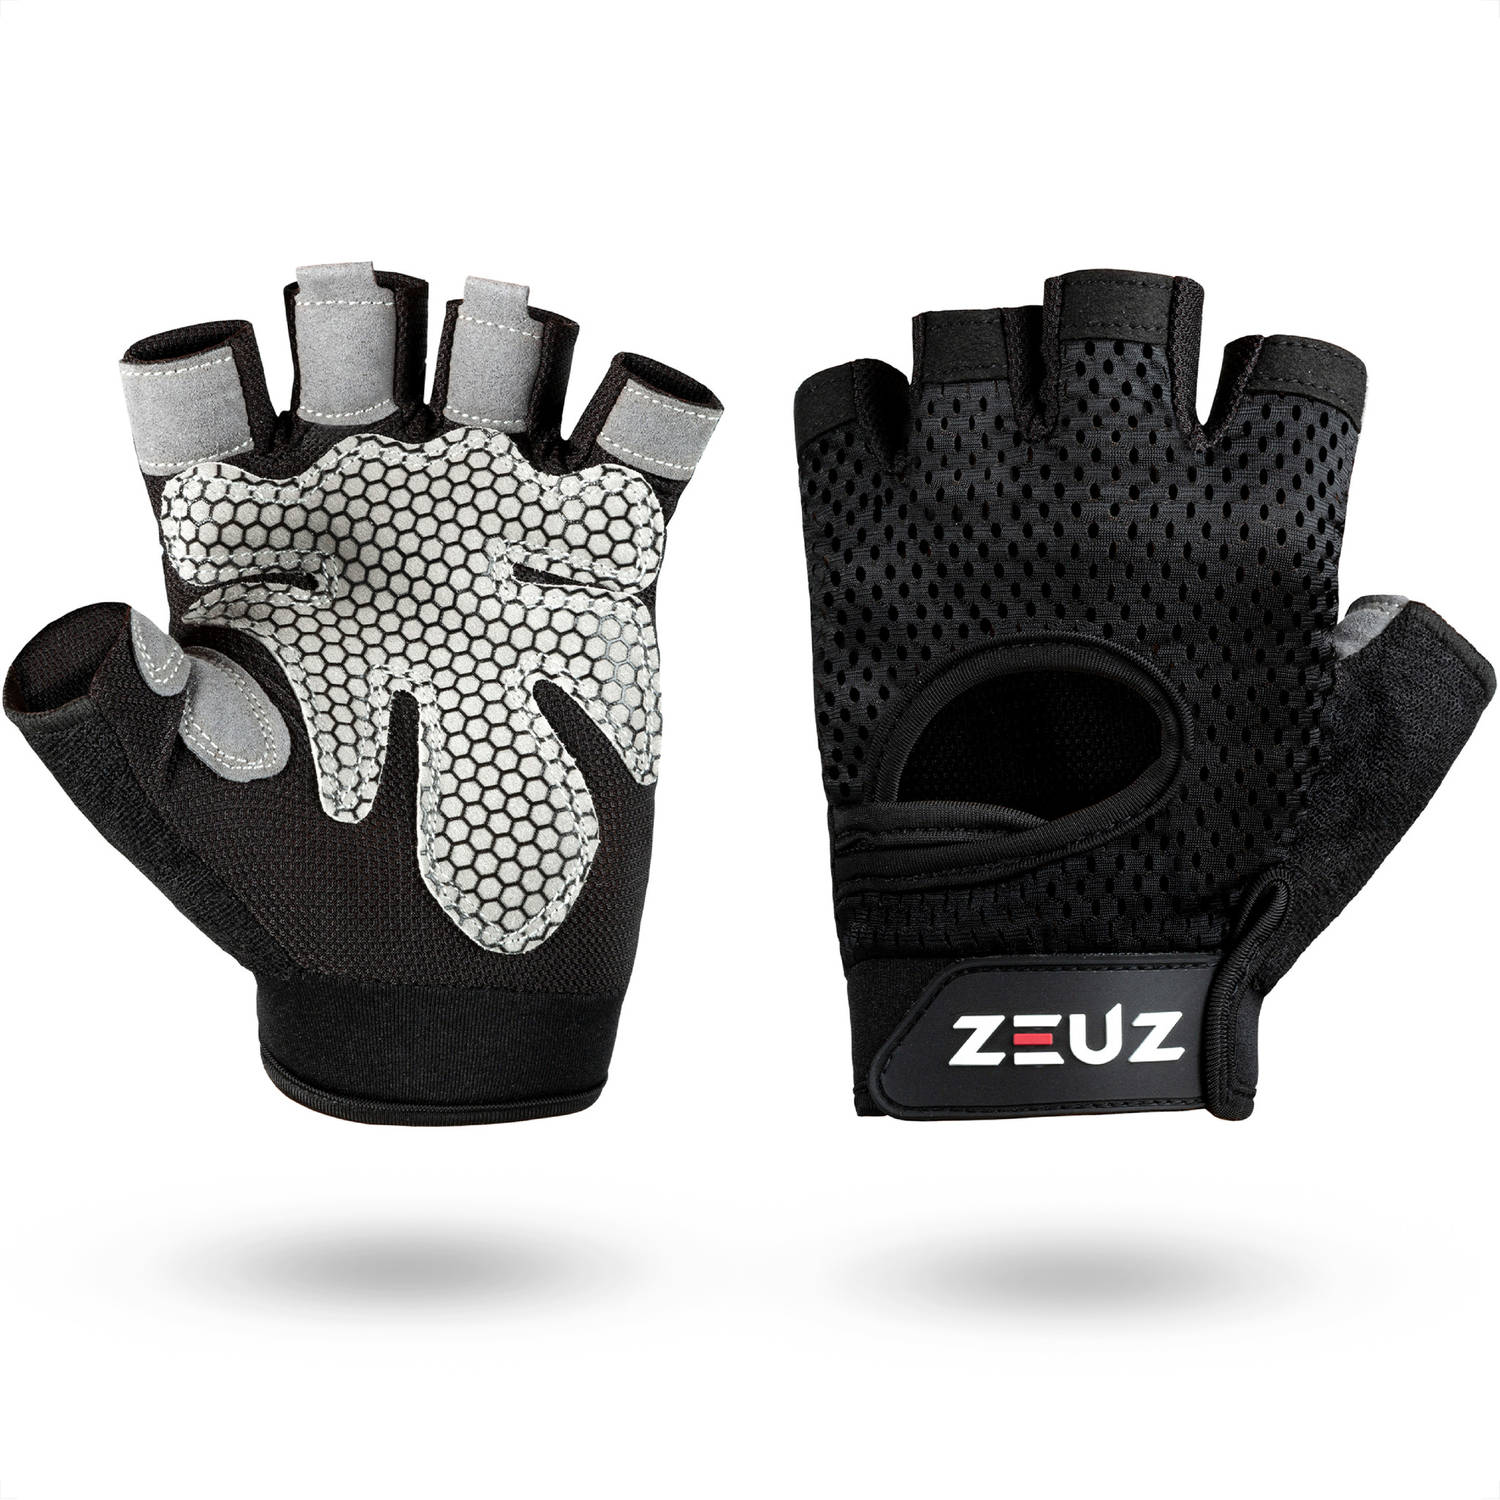 ZEUZ® Sport & Fitness Handschoenen Dames & Heren – Krachttraining Artikelen – Gym & Crossfit Training – Grijs & Zwart – Gloves voor meer grip en bescherming tegen blaren & eelt - M